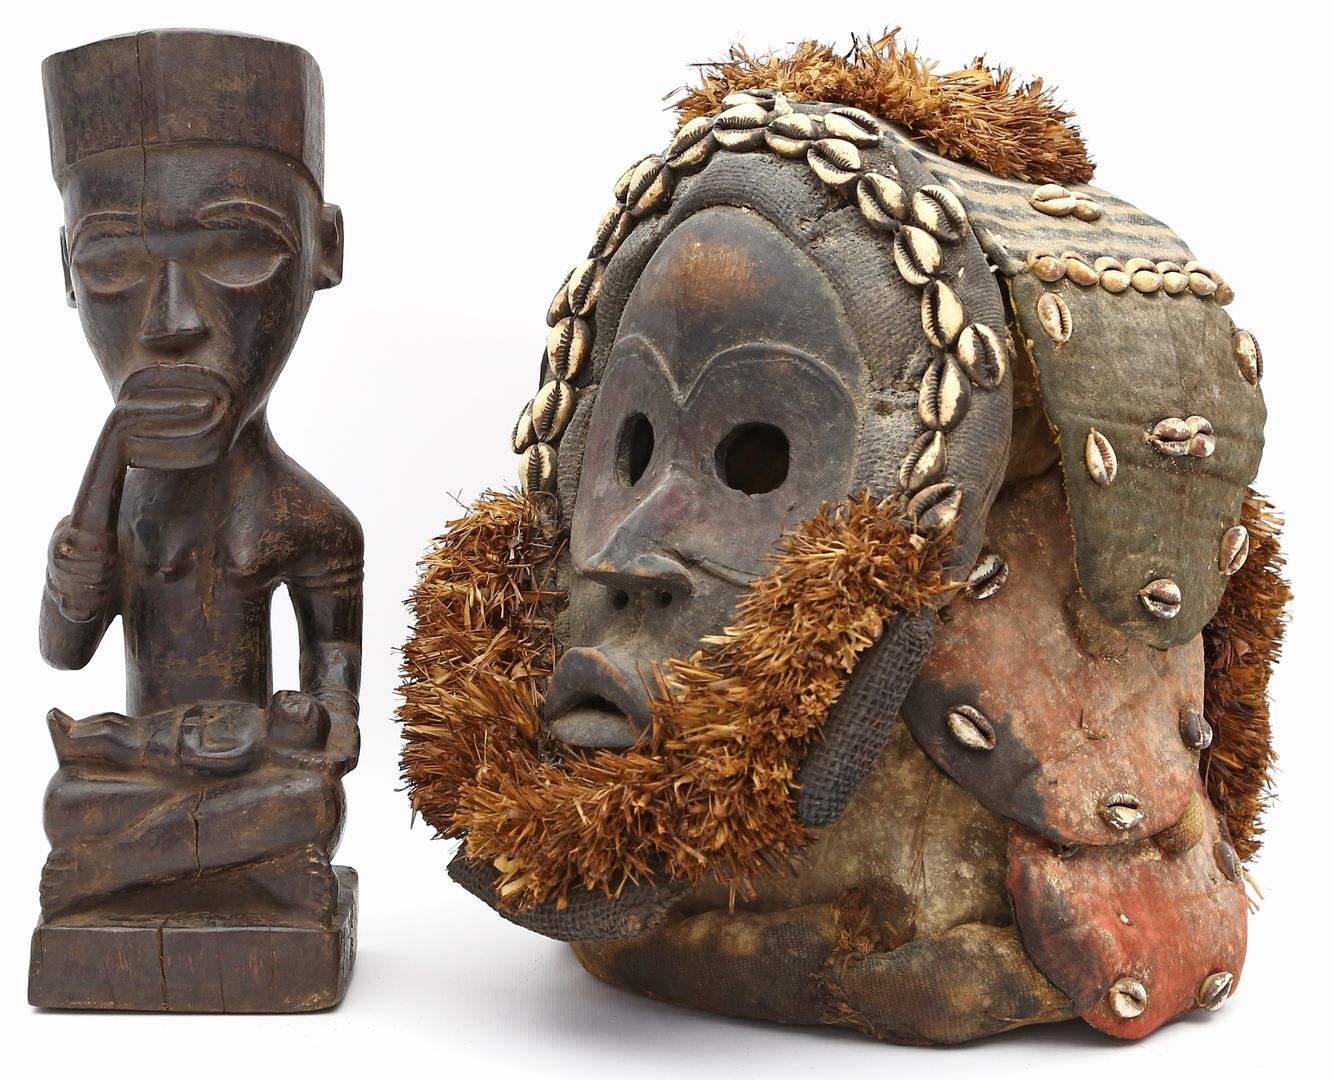 Afrikanische Maske und Skulptur.